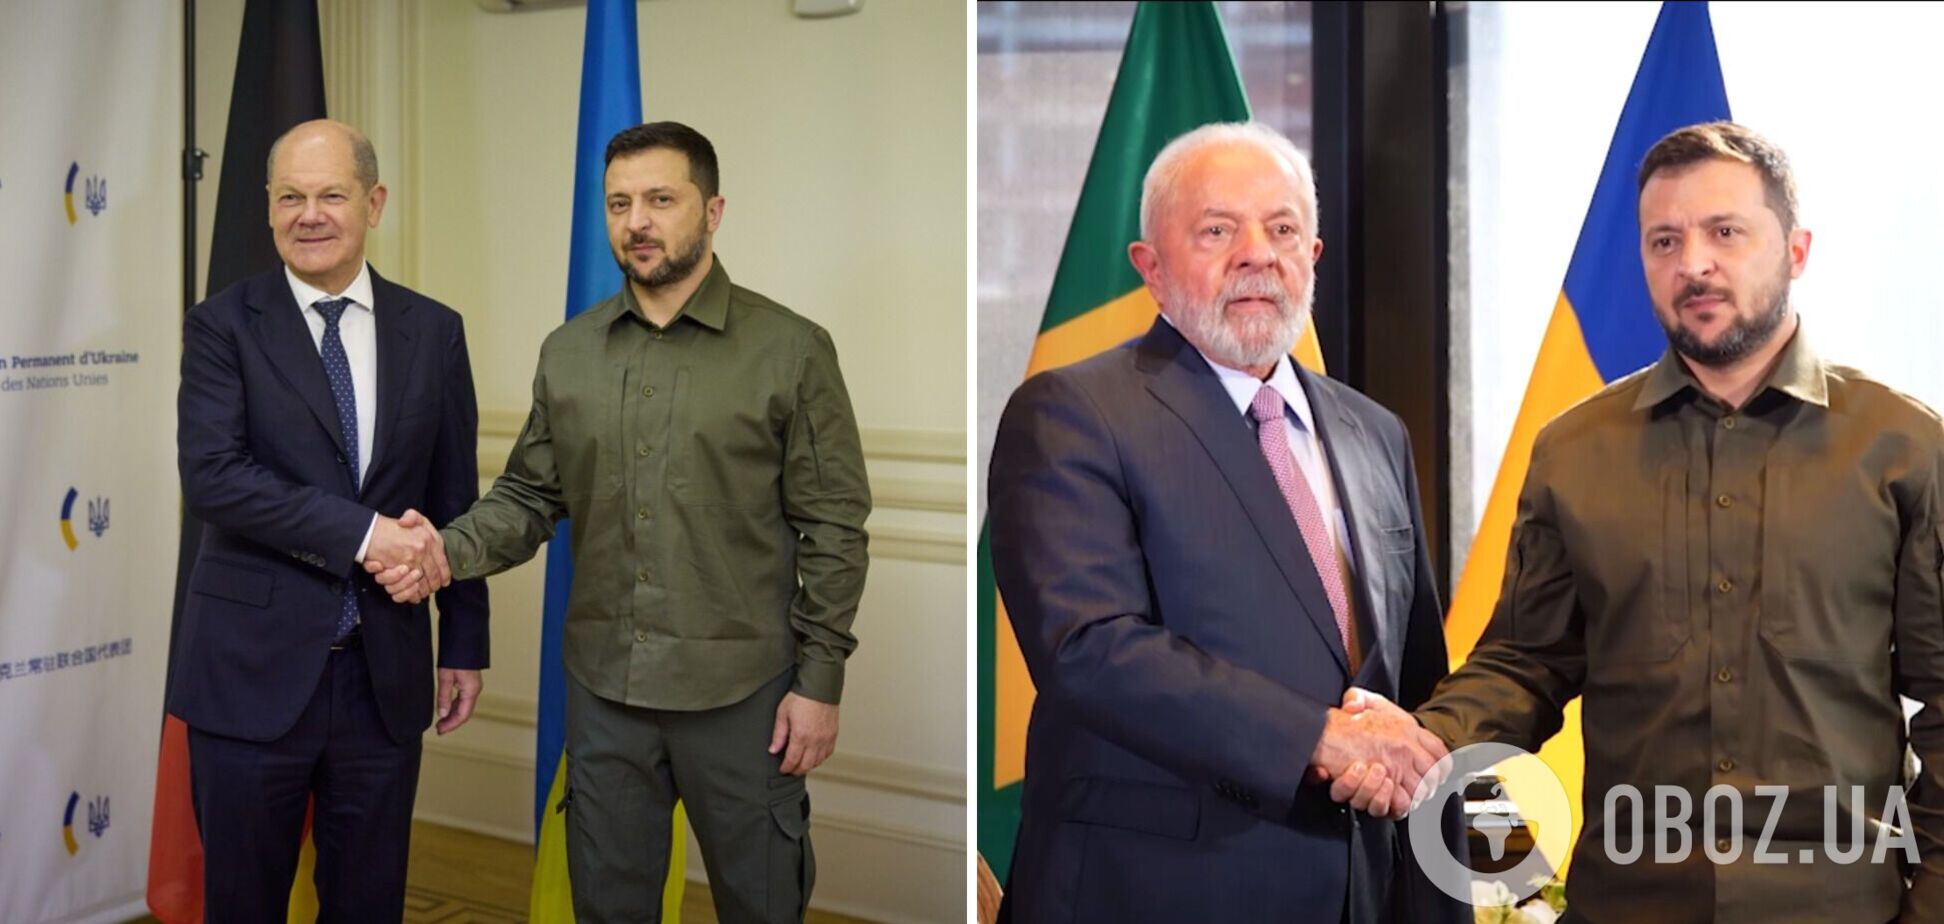 Зеленский провел переговоры с президентом Бразилии и канцлером Германии: все детали. Видео